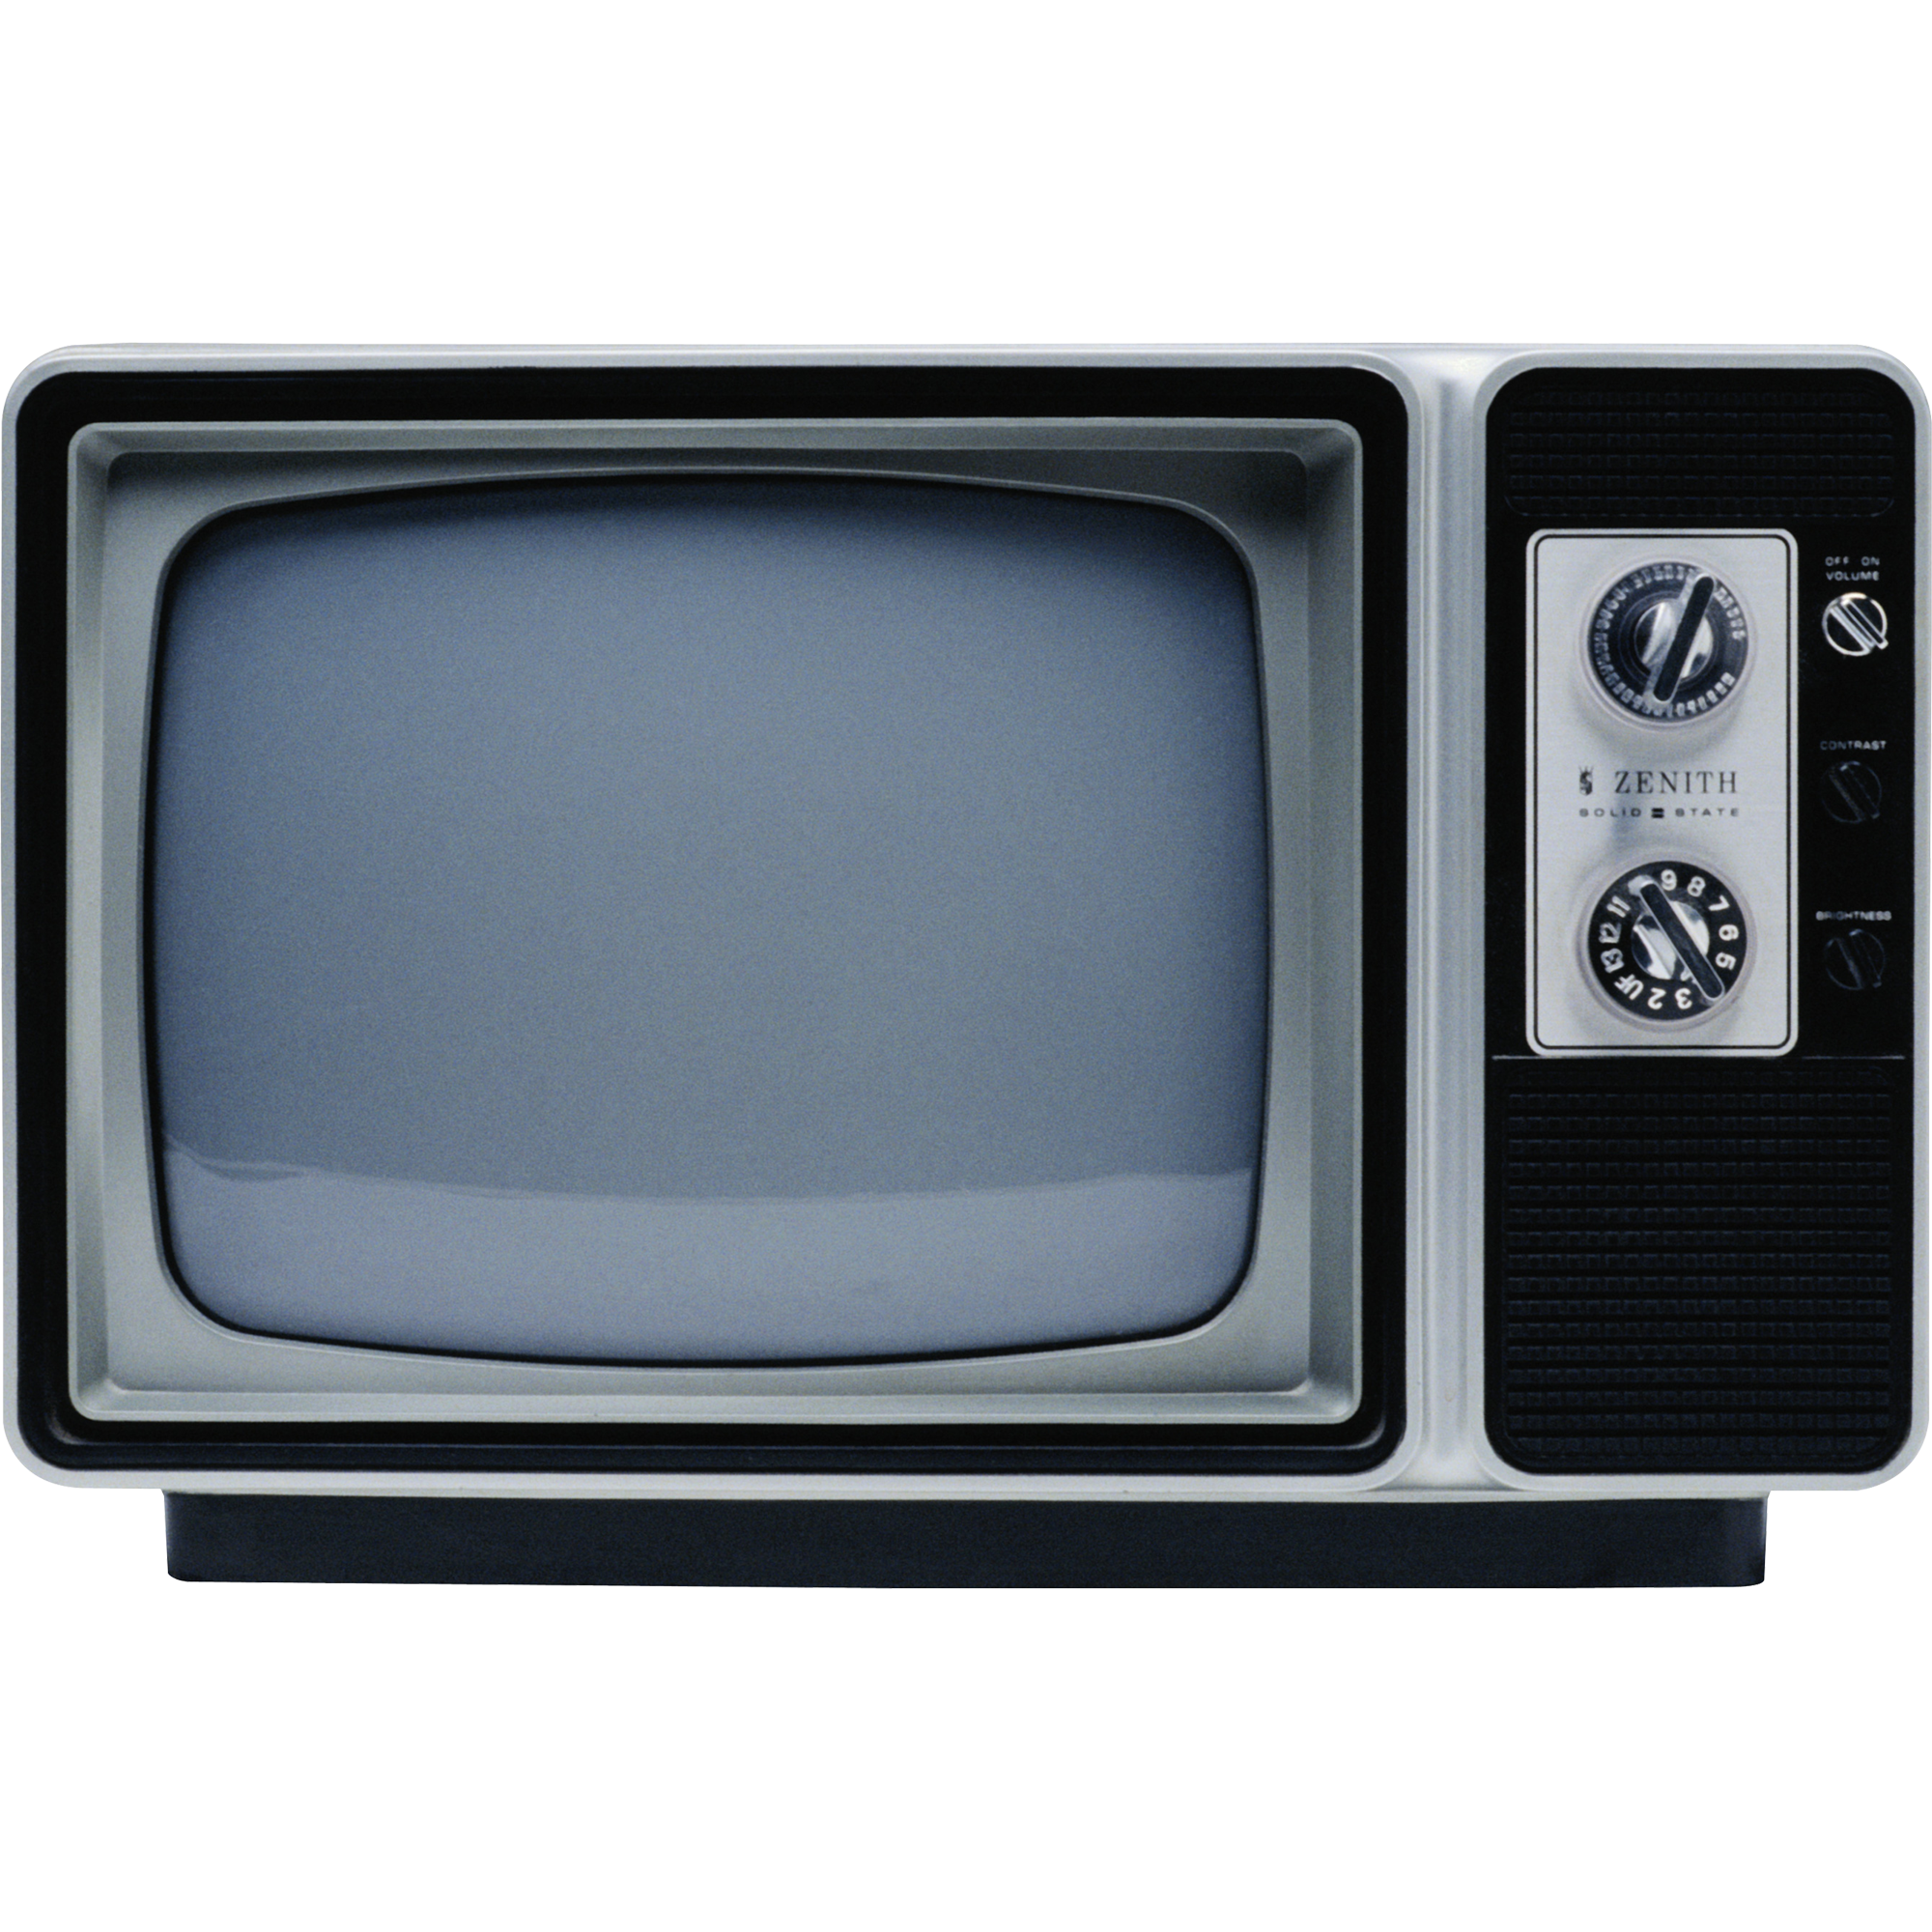 Old Tv  Transparent Image